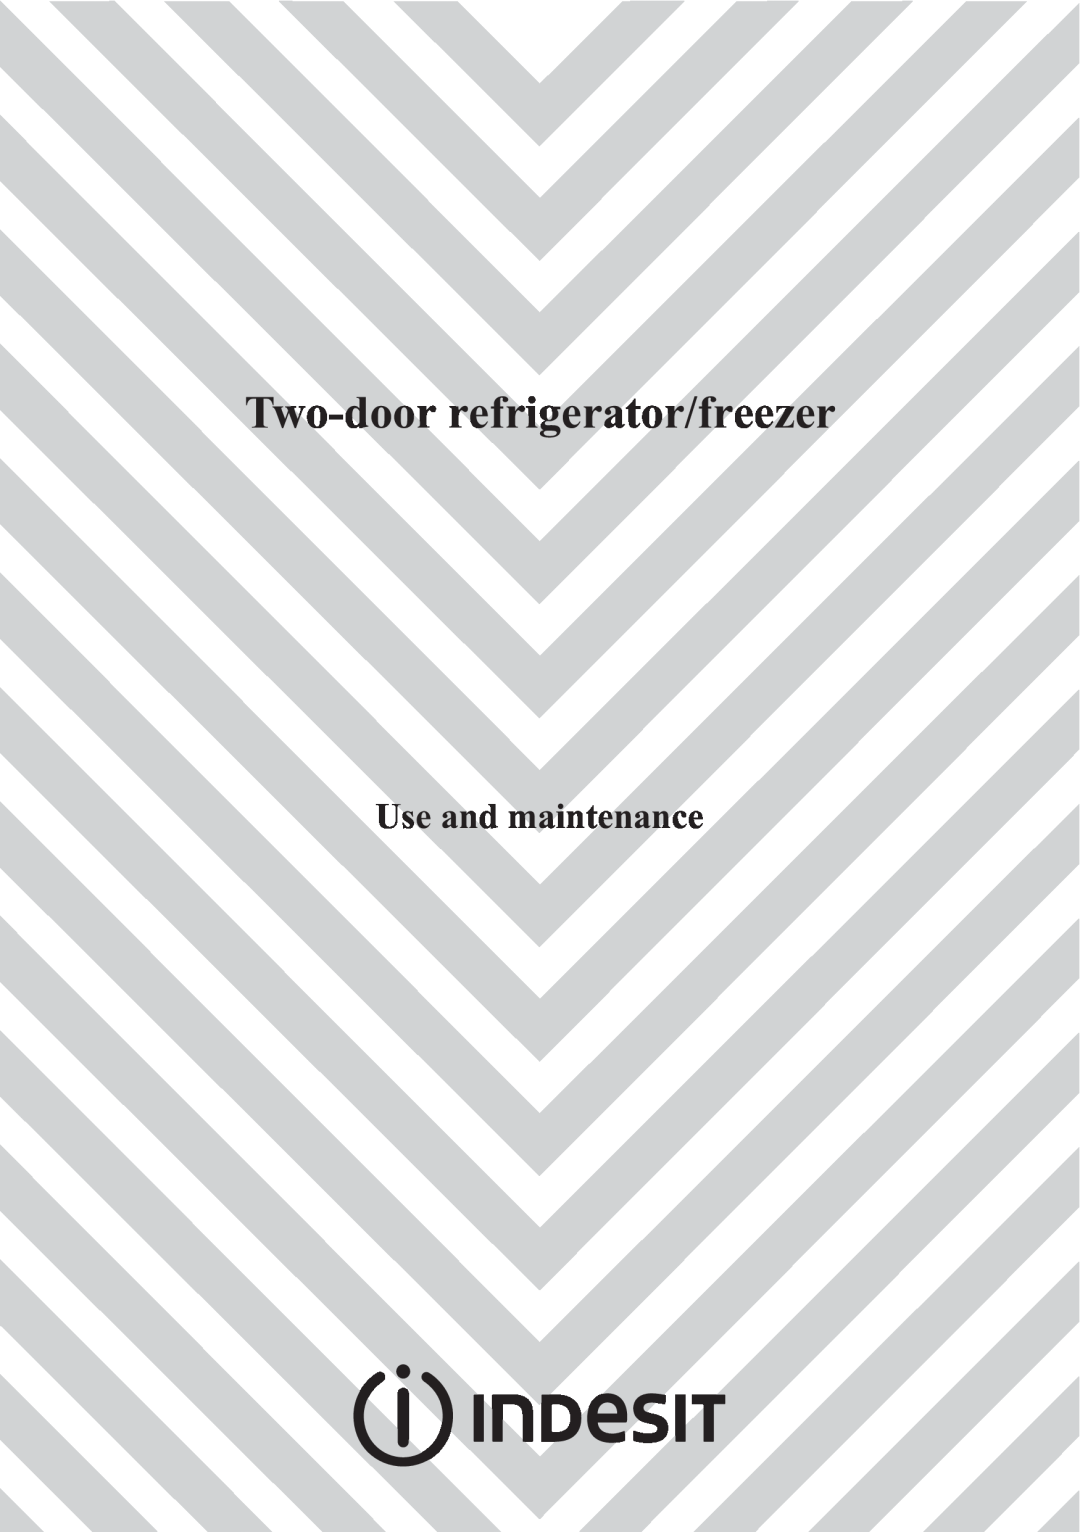 Indesit Two-Door Refrigerator/Freezer manual Two-doorrefrigerator/freezer, Use and maintenance 